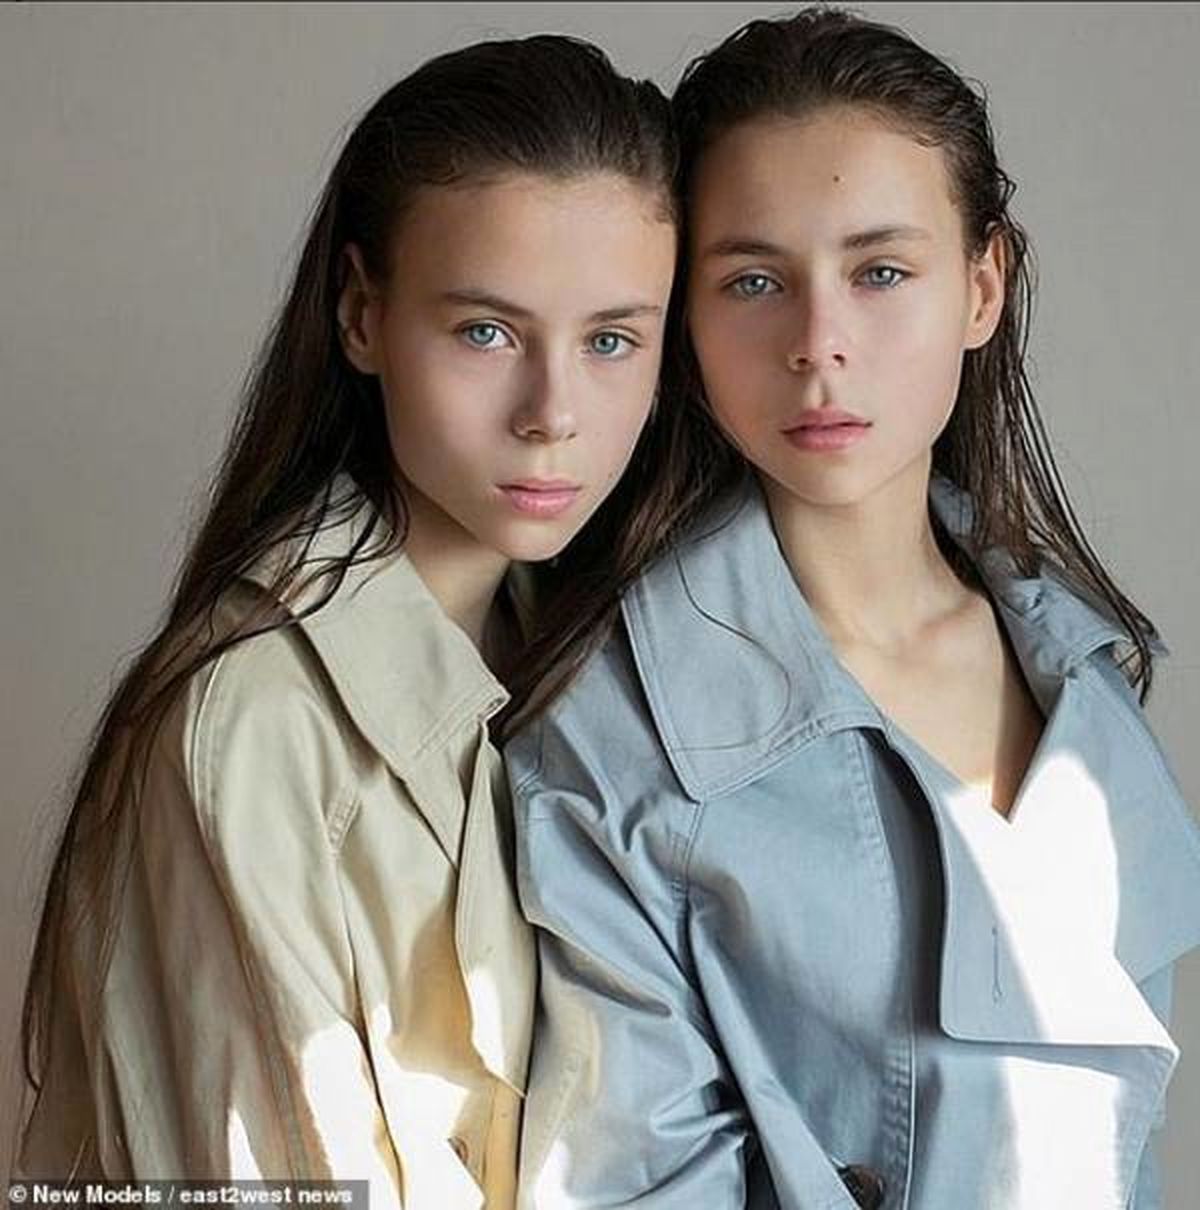 پایان تلخ عشق مدلینگ شدن برای خواهران دوقلو + تصاویر